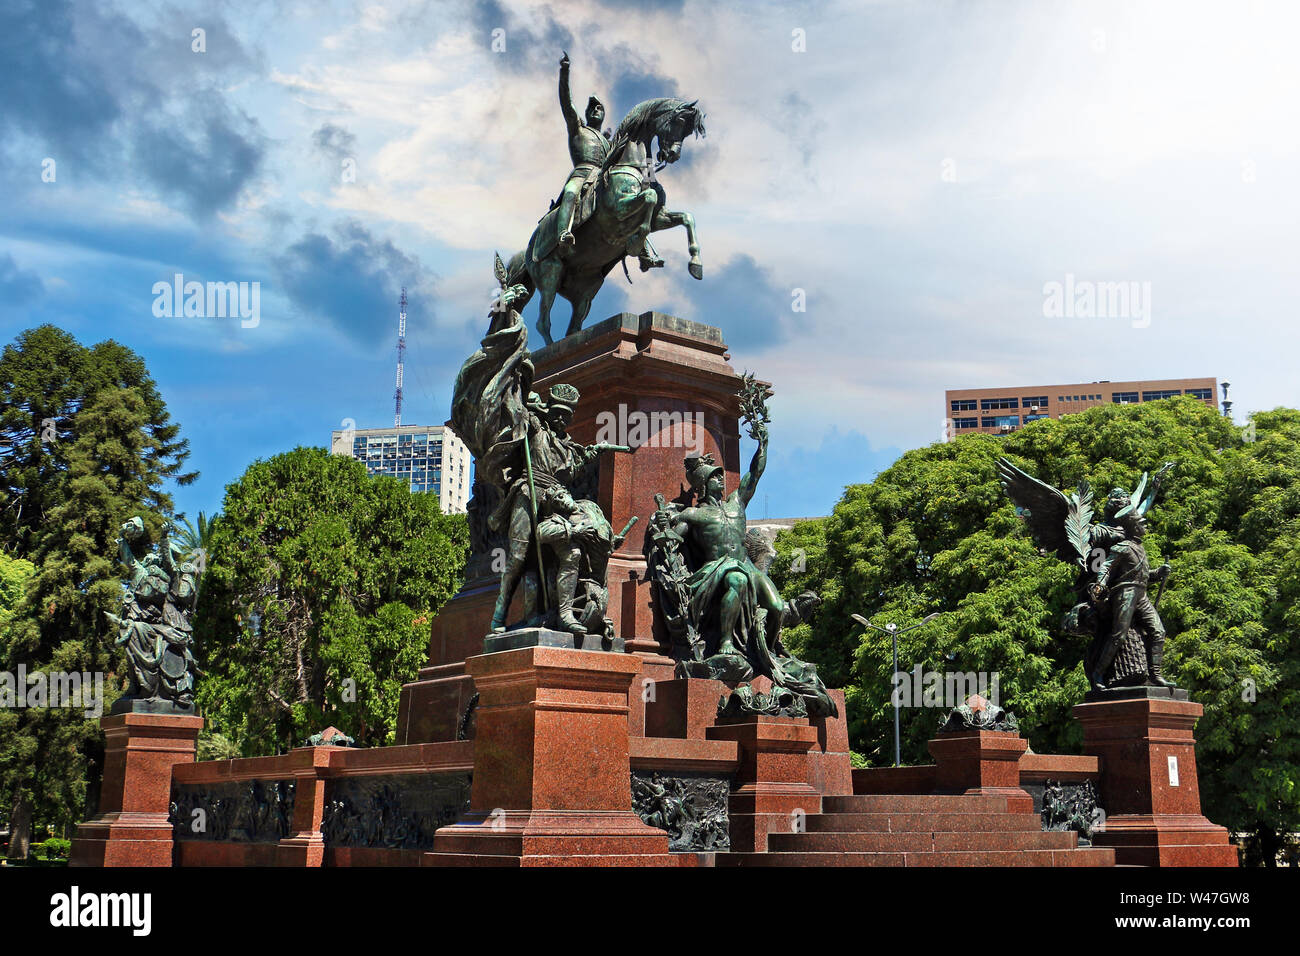 Blick auf die Statue von San Martin in einem Park von Buenos Aires, Argentinien, gegen einen Dramatischen blauen Himmel. Stockfoto